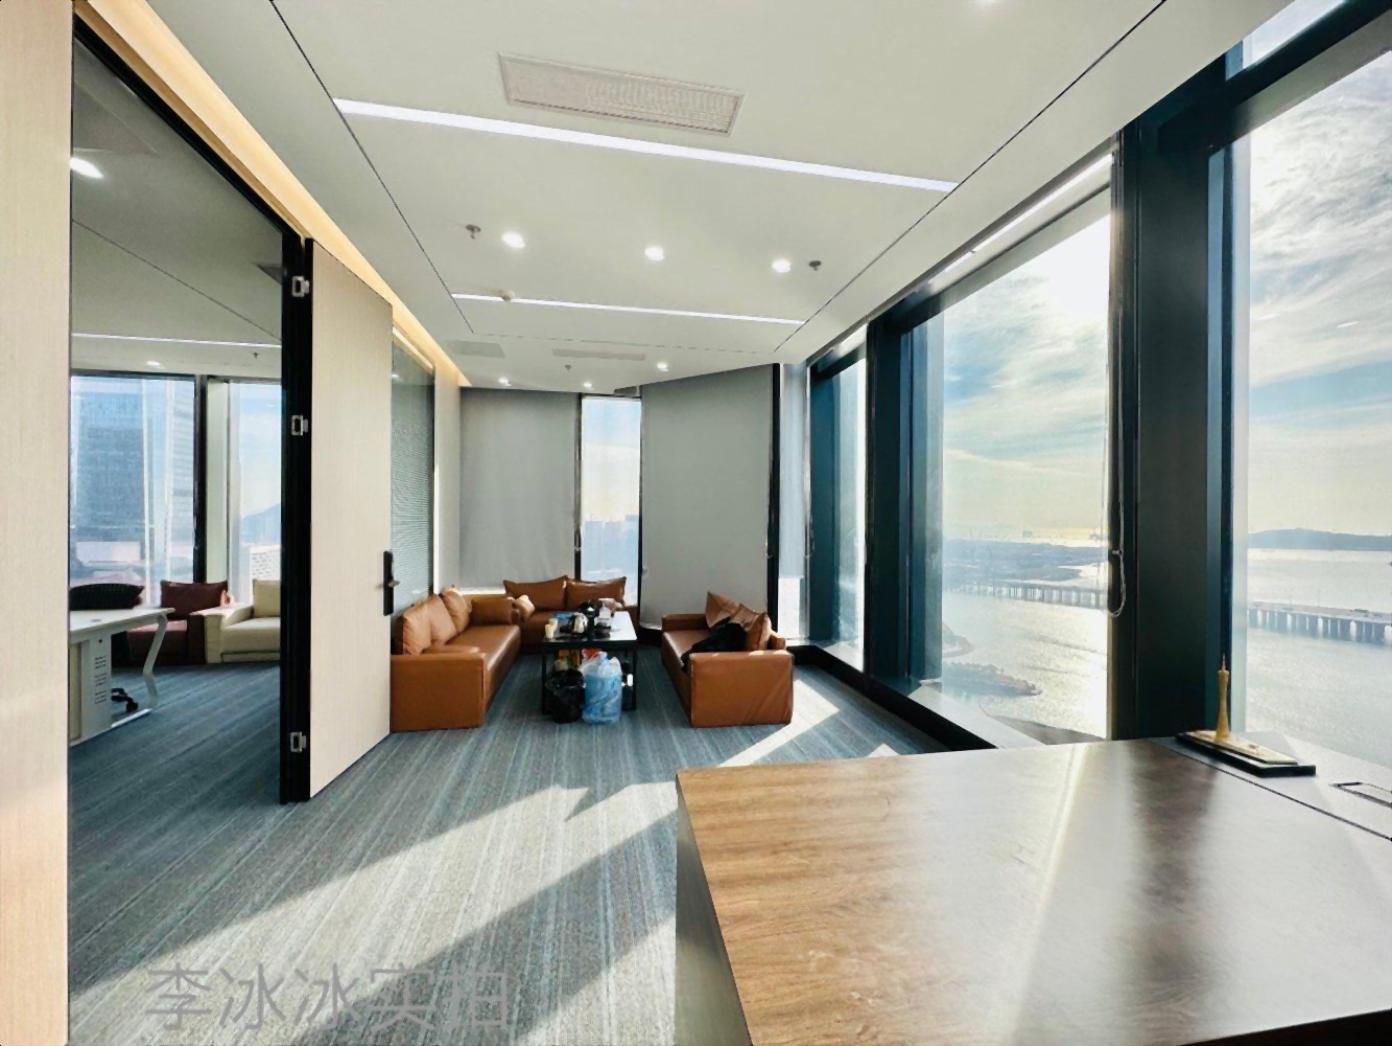 看一线海景的办公室豪华装修带精装家私前海金融中心双地铁